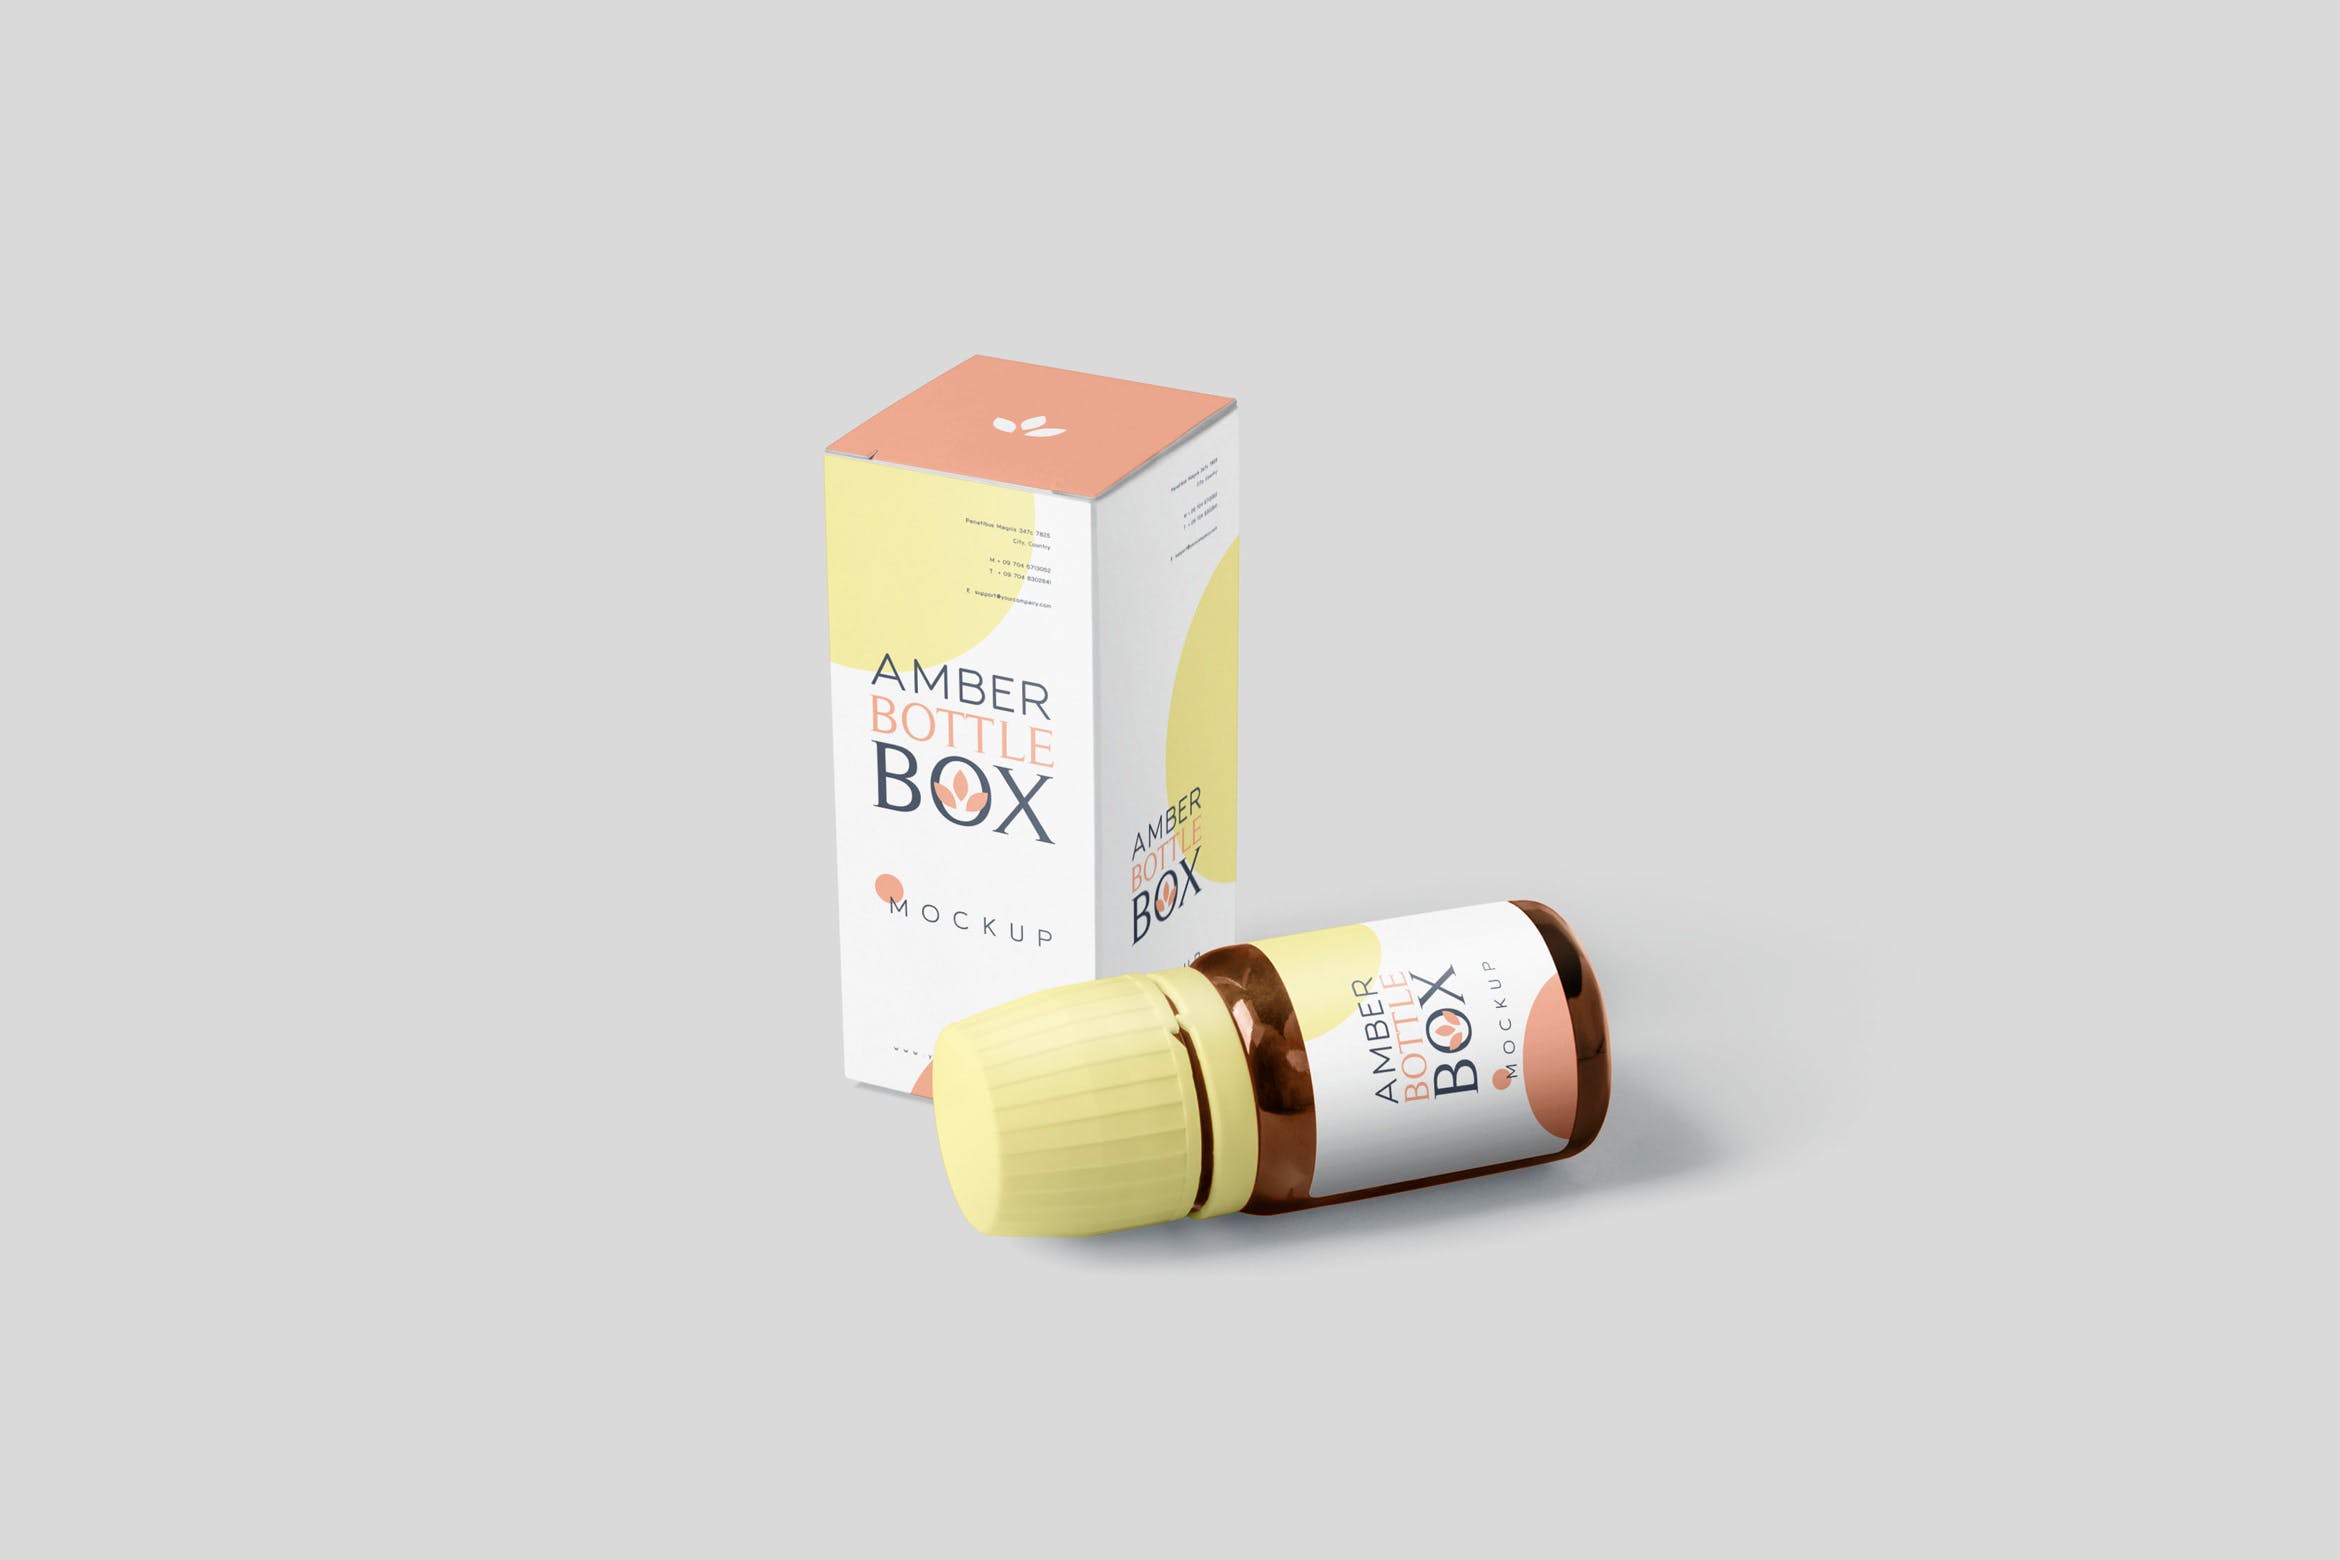 药物瓶&包装纸盒设计图素材中国精选模板 Amber Bottle Box Mockup Set插图